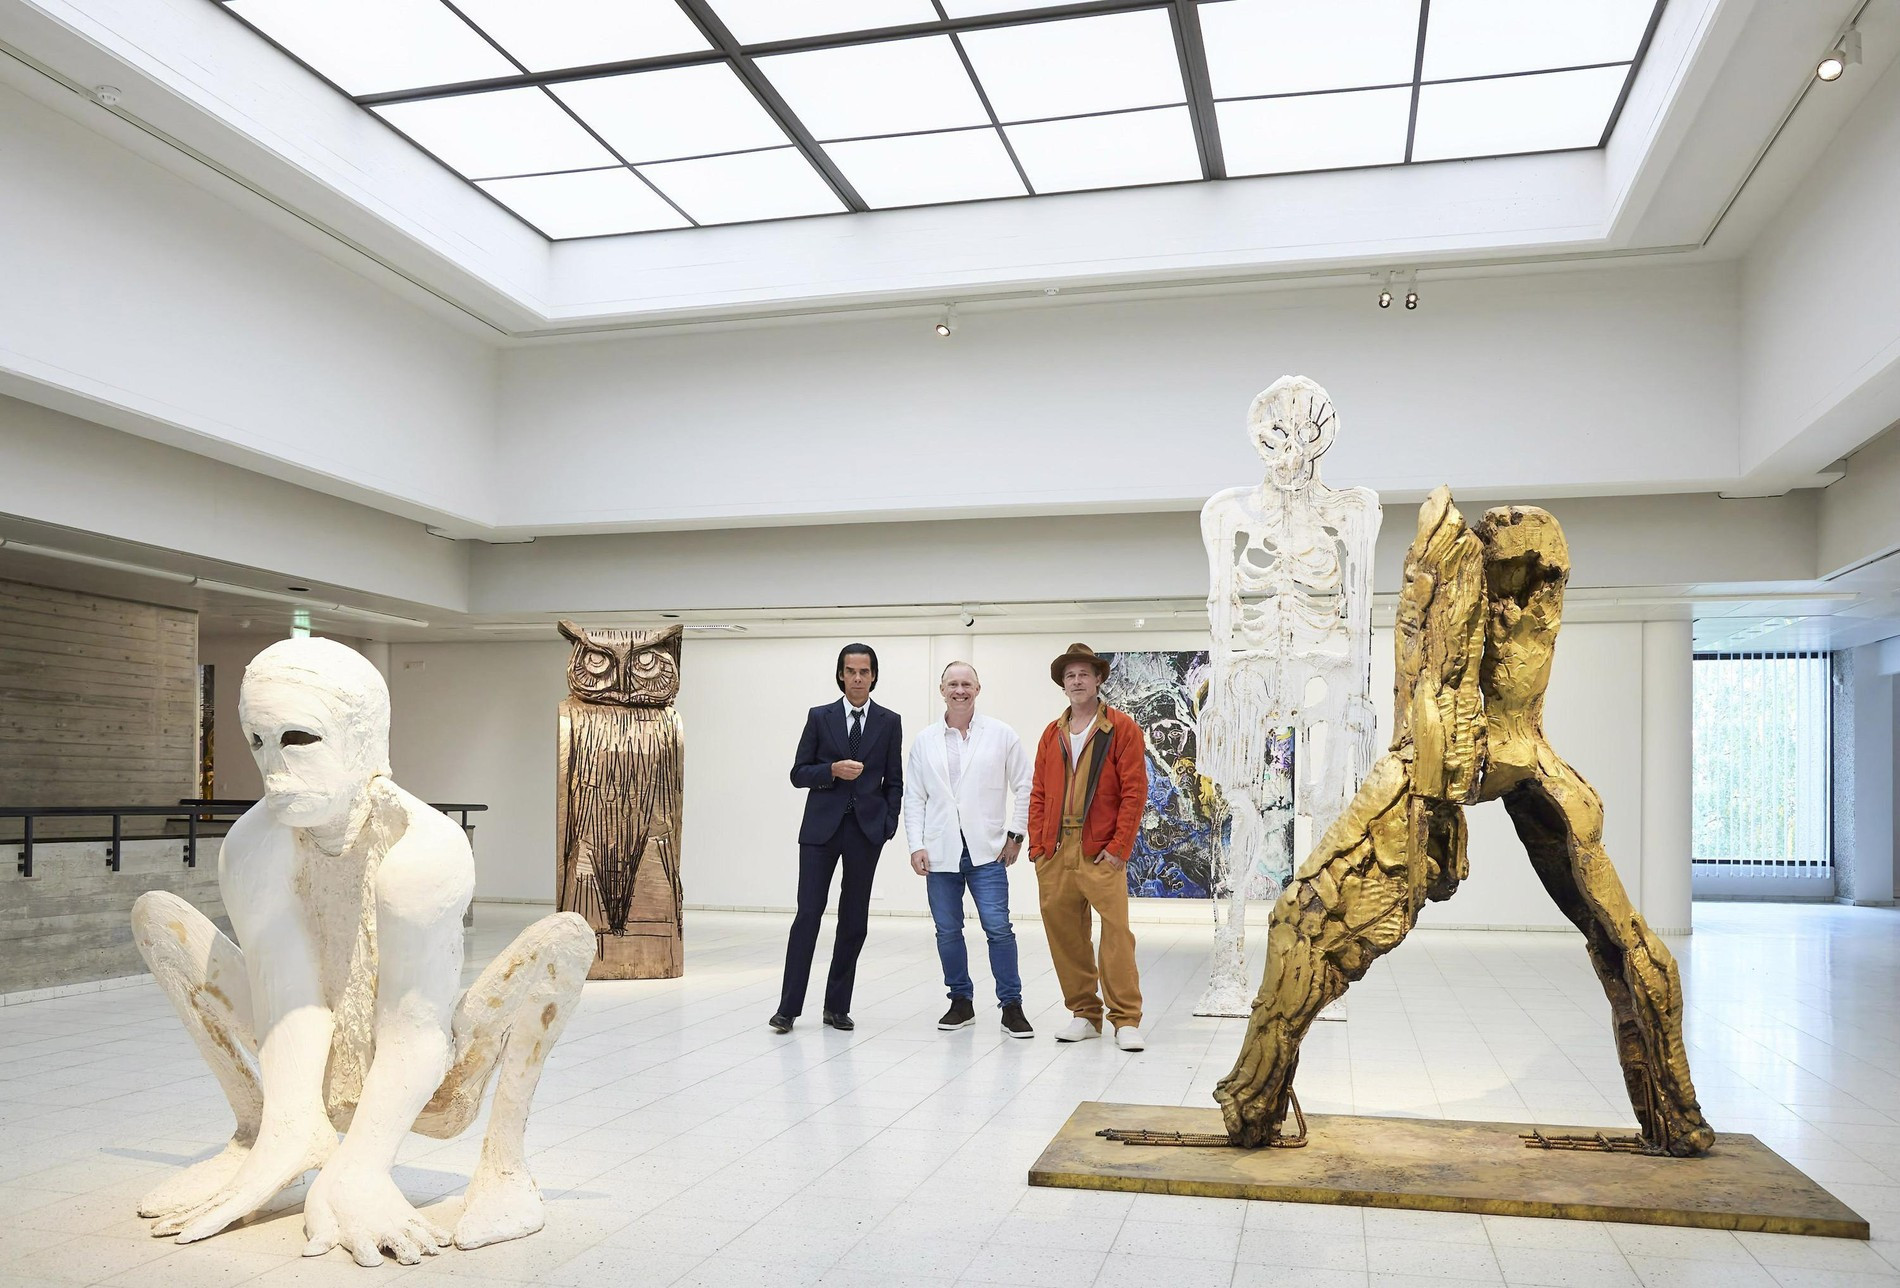 Кейв, Хаусаго и Питт со своими работами на выставке в Тампере 
Фото: AFP